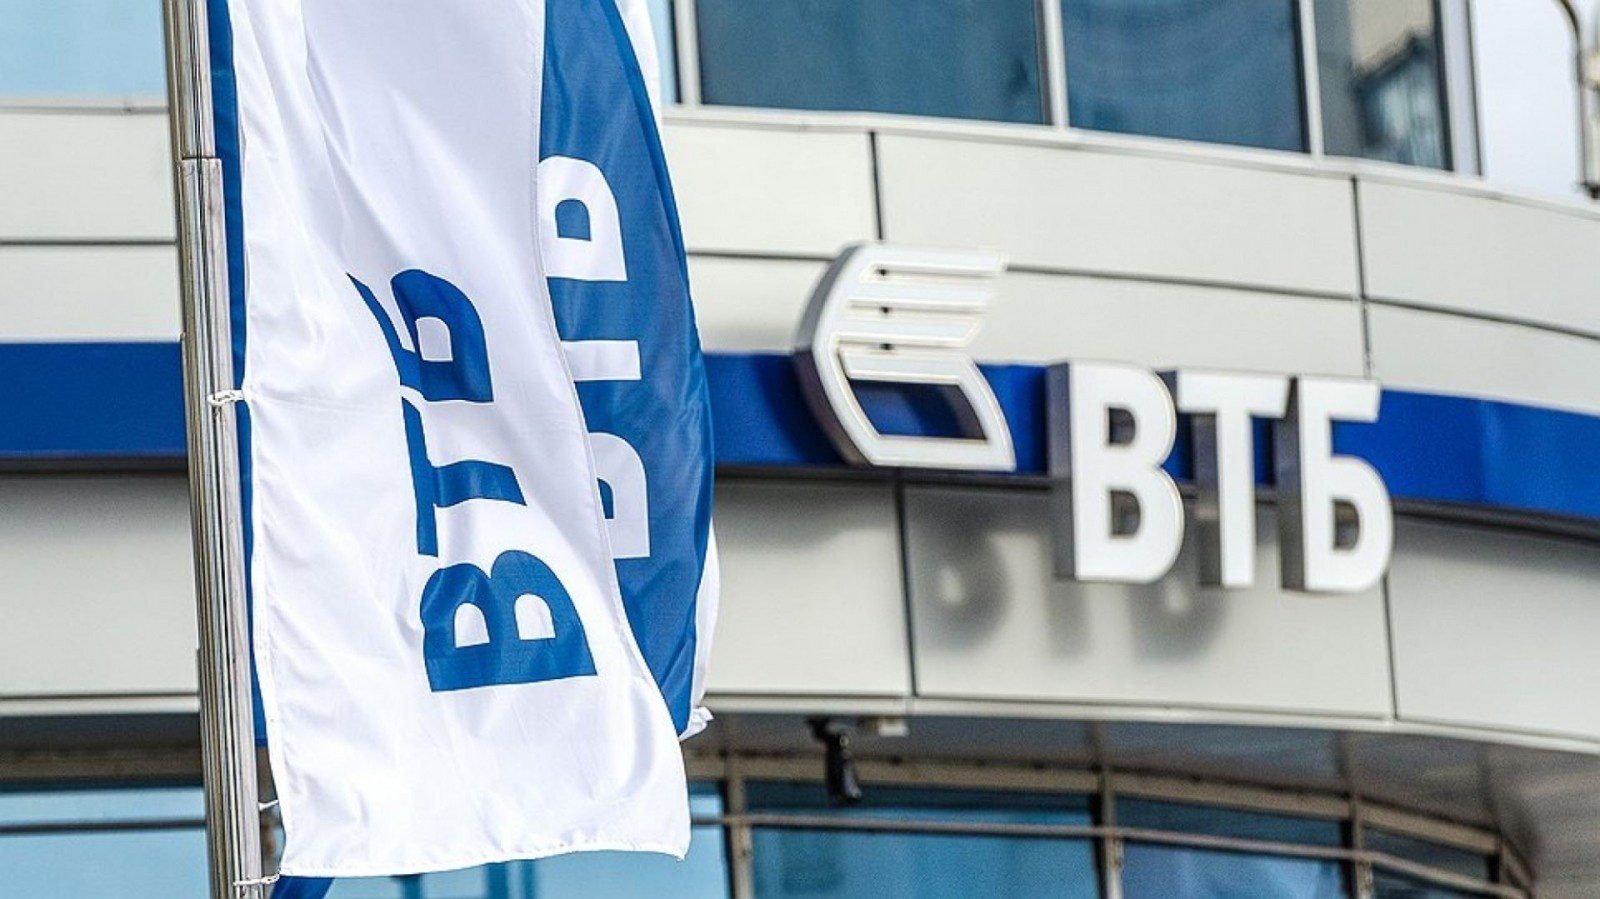 ВТБ объявил о скором открытии офисов в Луганске, Донецке и Мариуполе